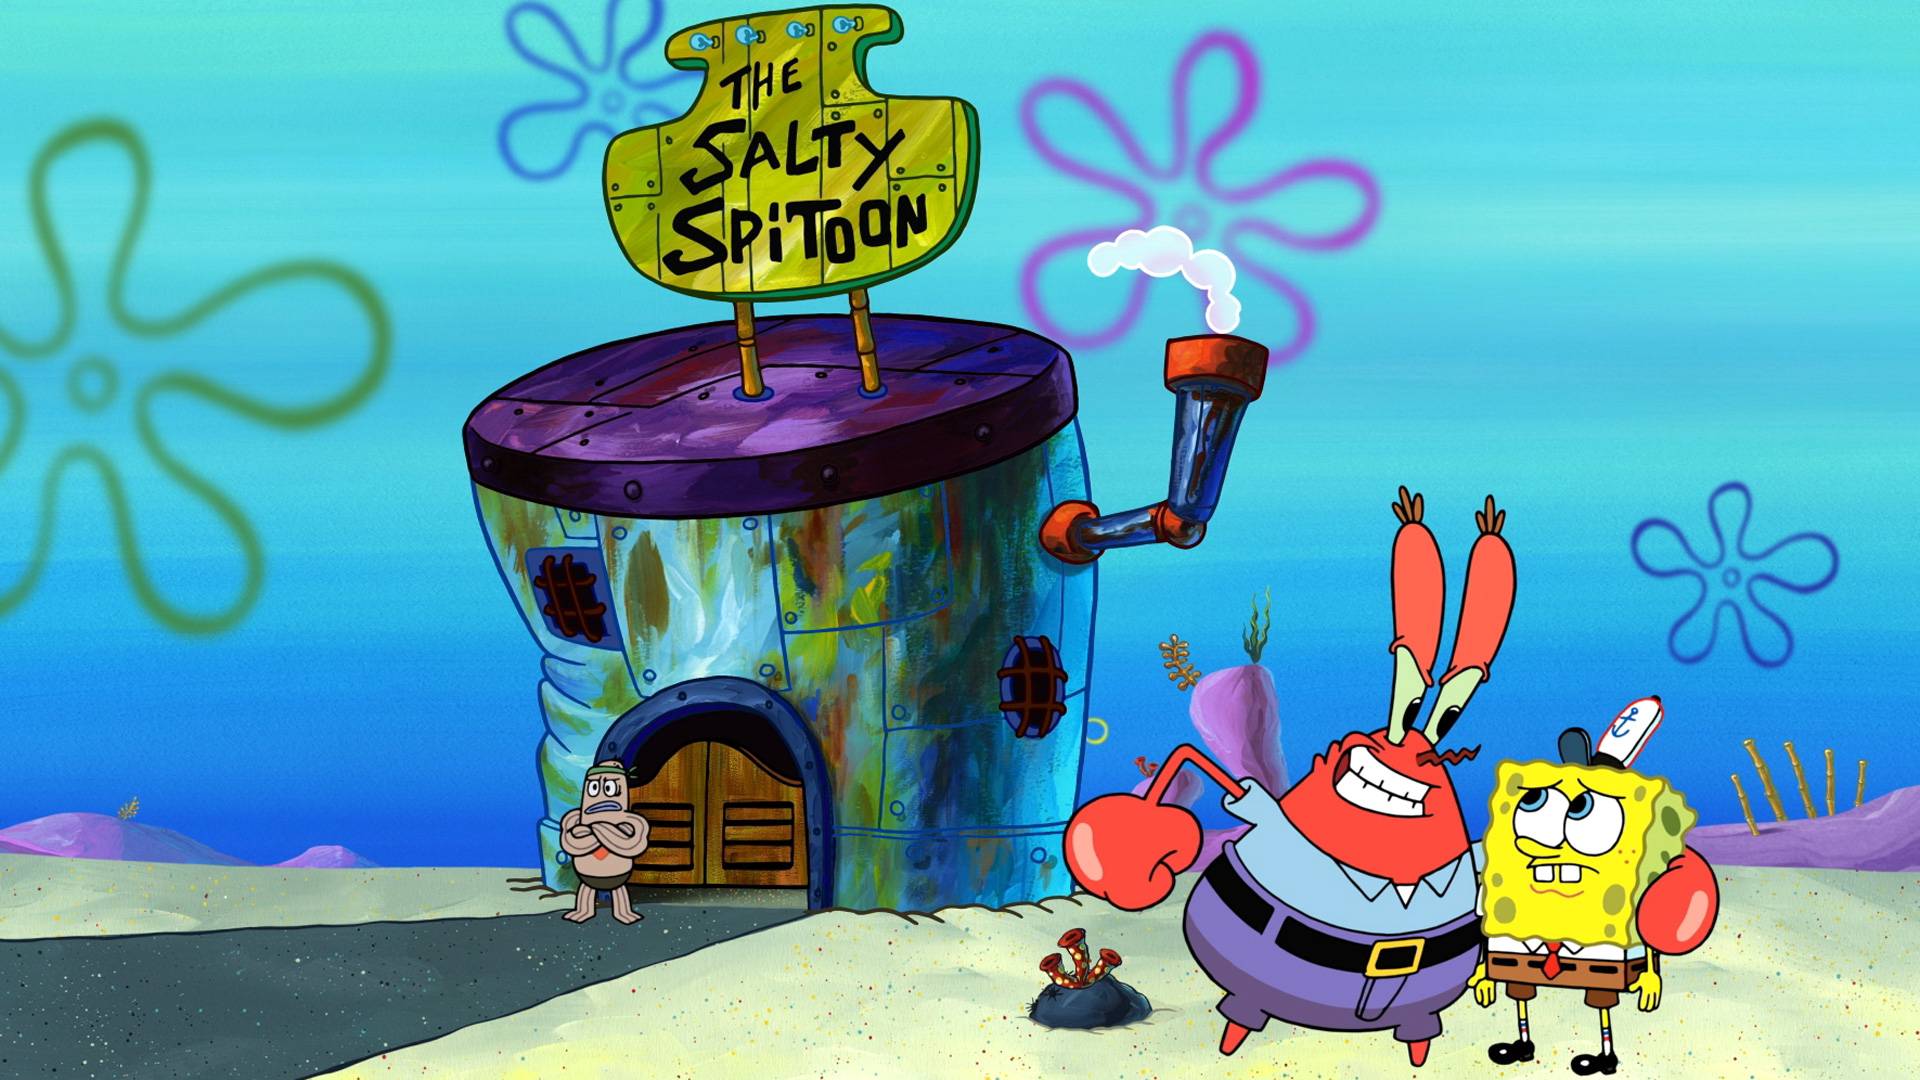 Spongebob Squarepants Season 13 Ep 14 The Salty Sponge Karen For Spot Full Episode Nick